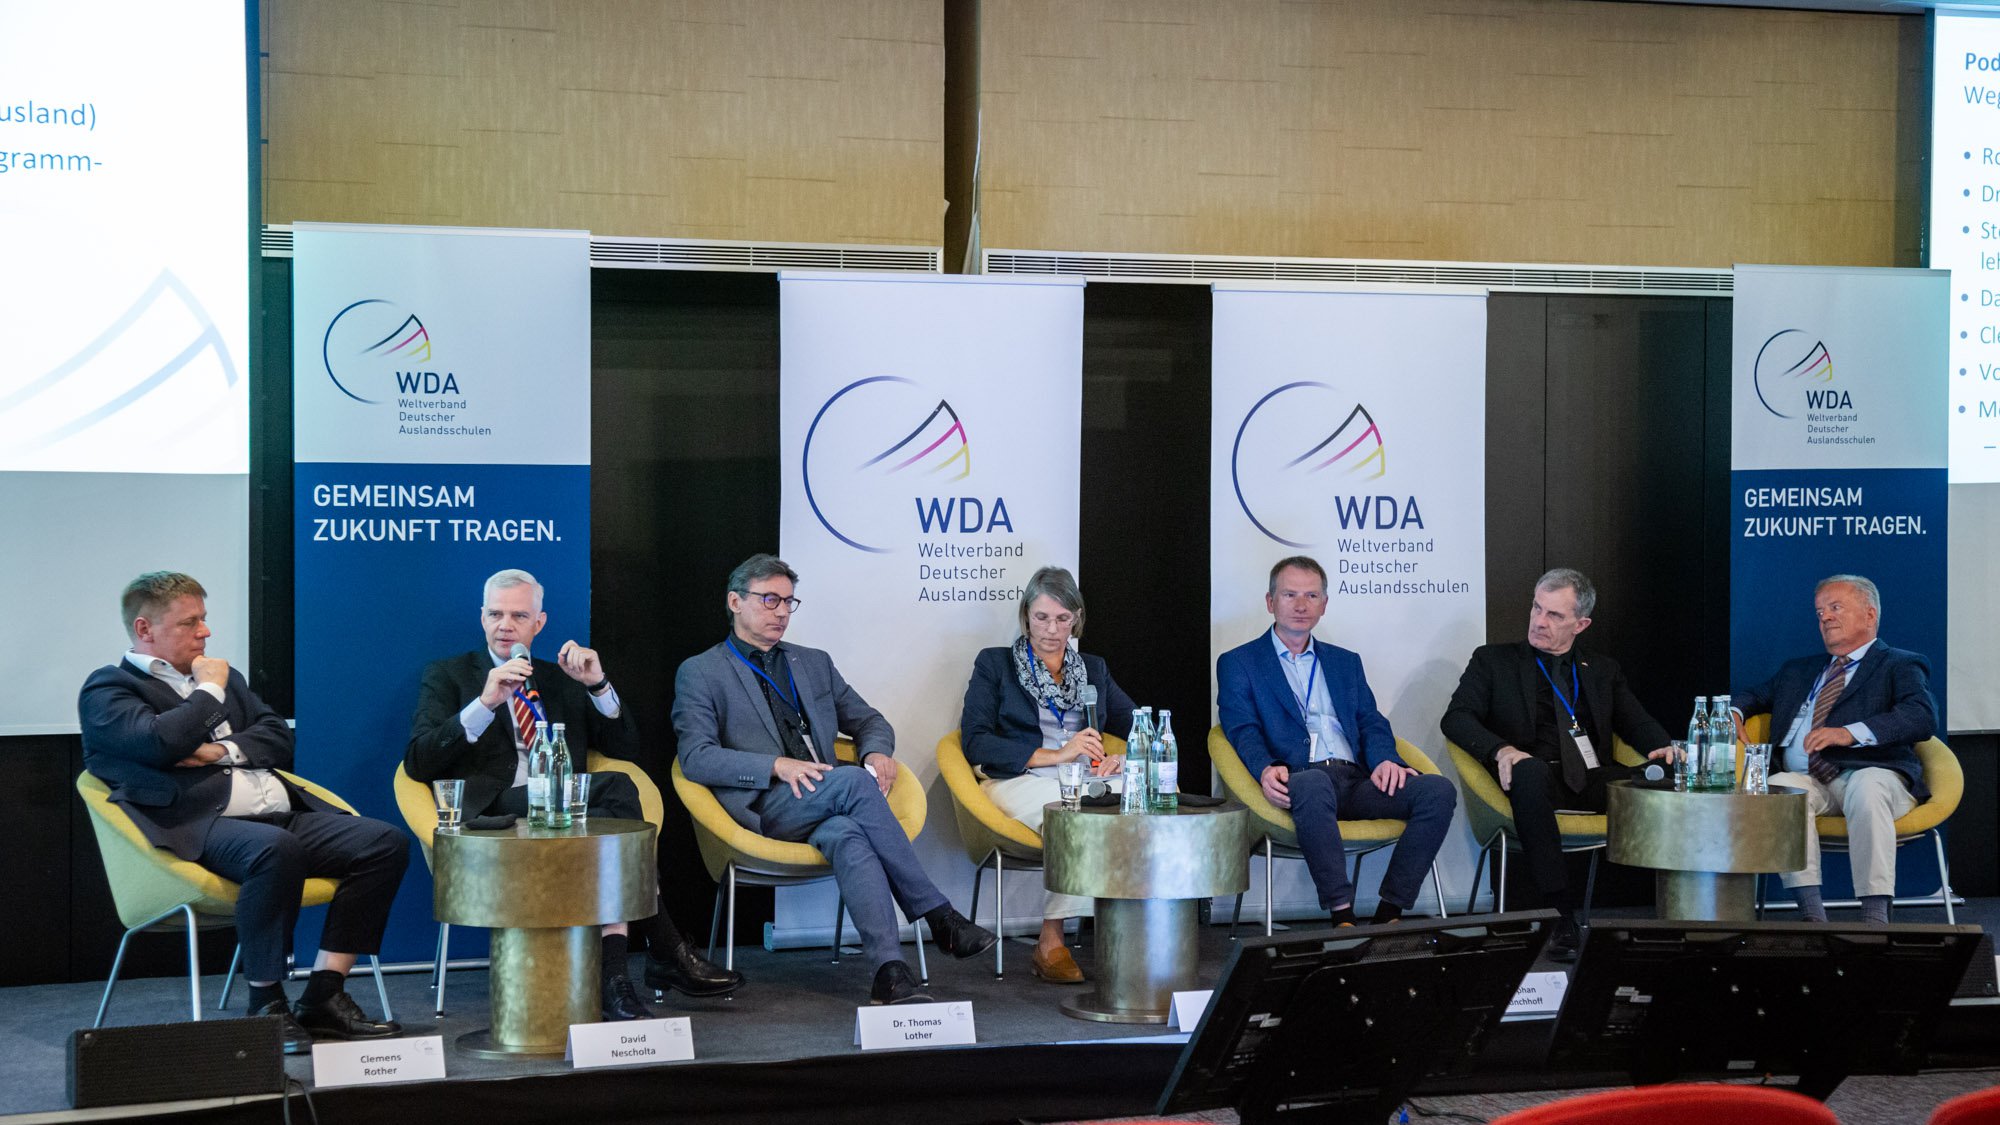 WDA-Symposium: Wege zur Stärkung der Deutschen Auslandsschulen durch Zusammenarbeit